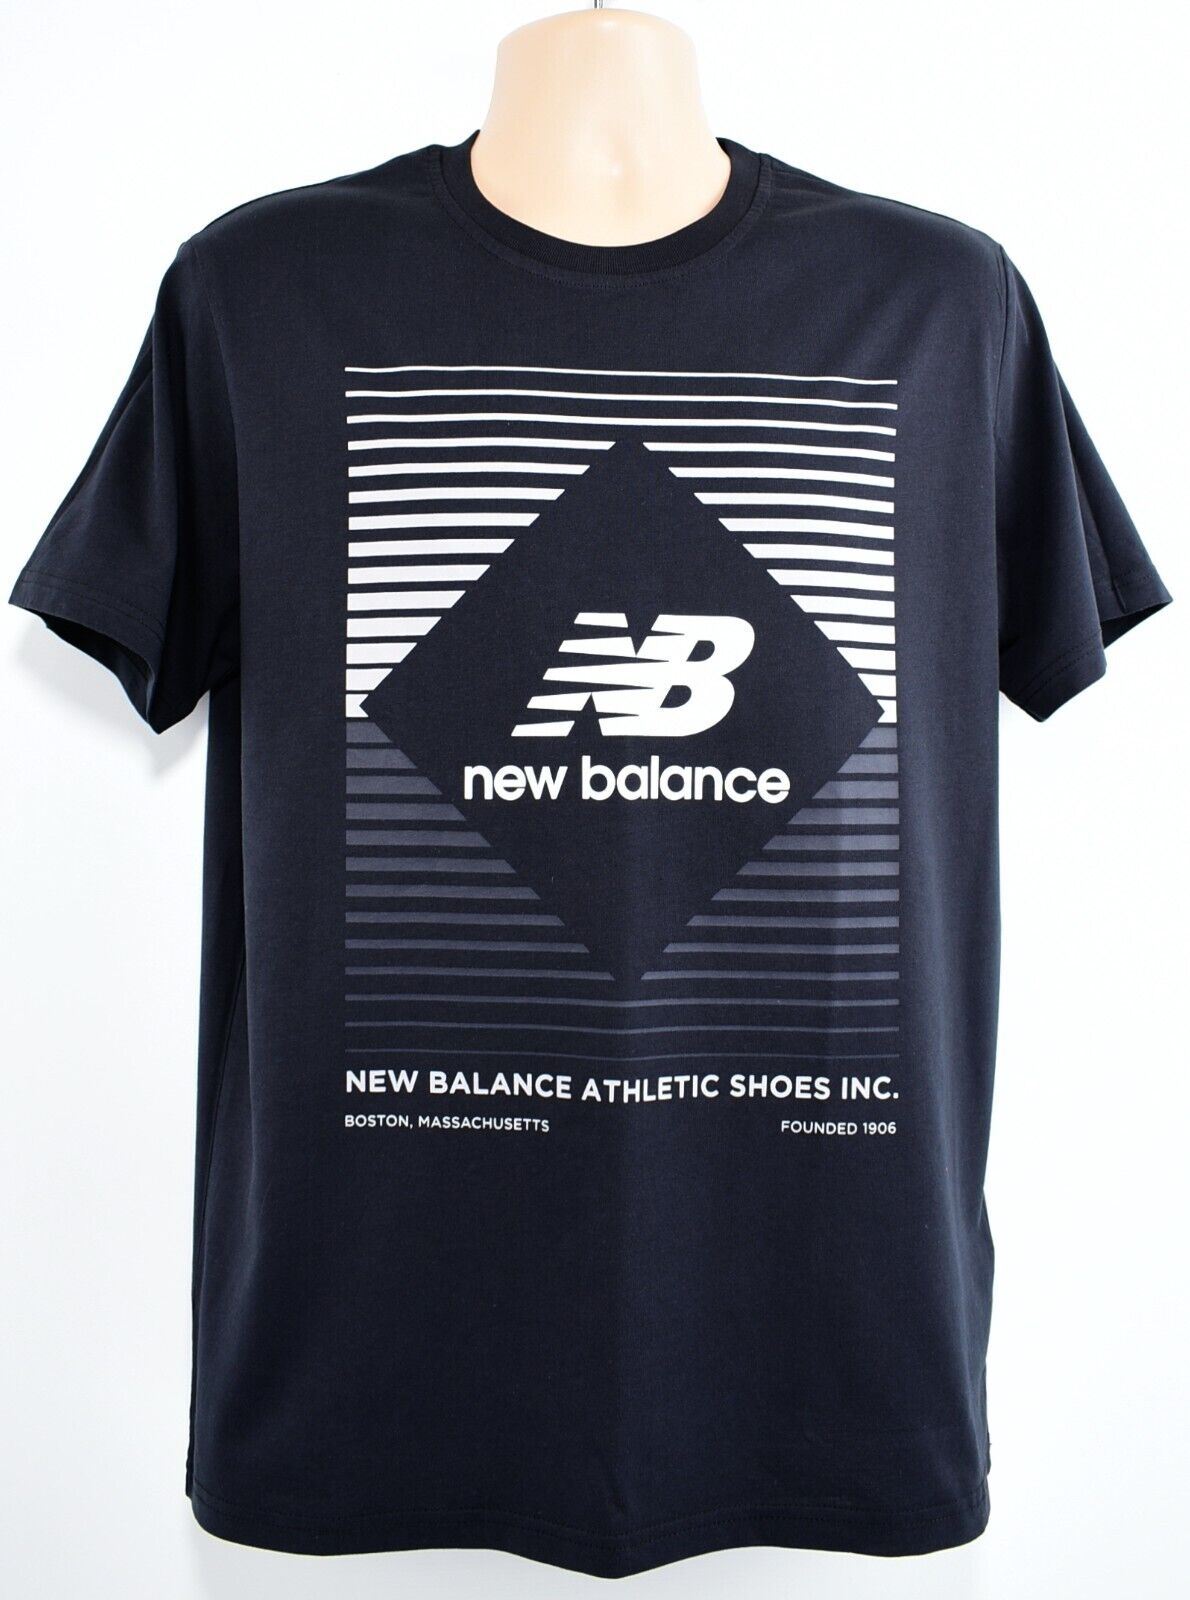 NEW BALANCE Men's Diamond Logo T-shirt, Black, size LARGE